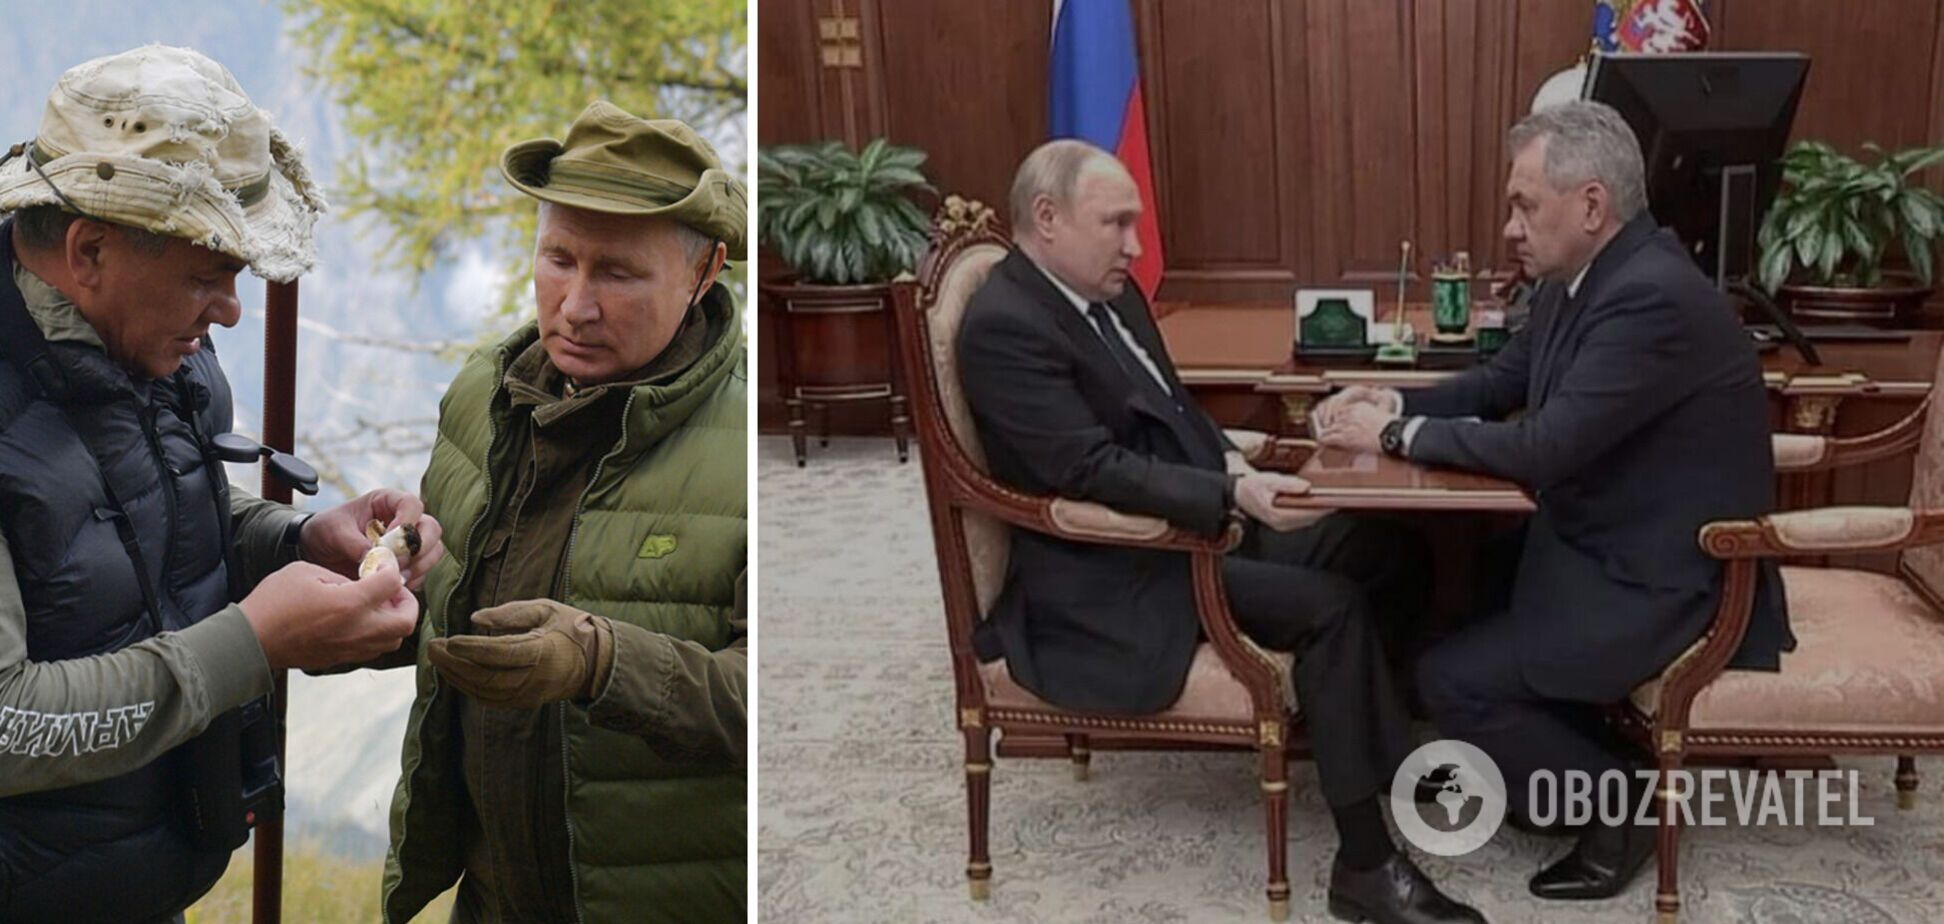 Встреча 'болезненного' Путина с Шойгу вызвала волну мемов в сети